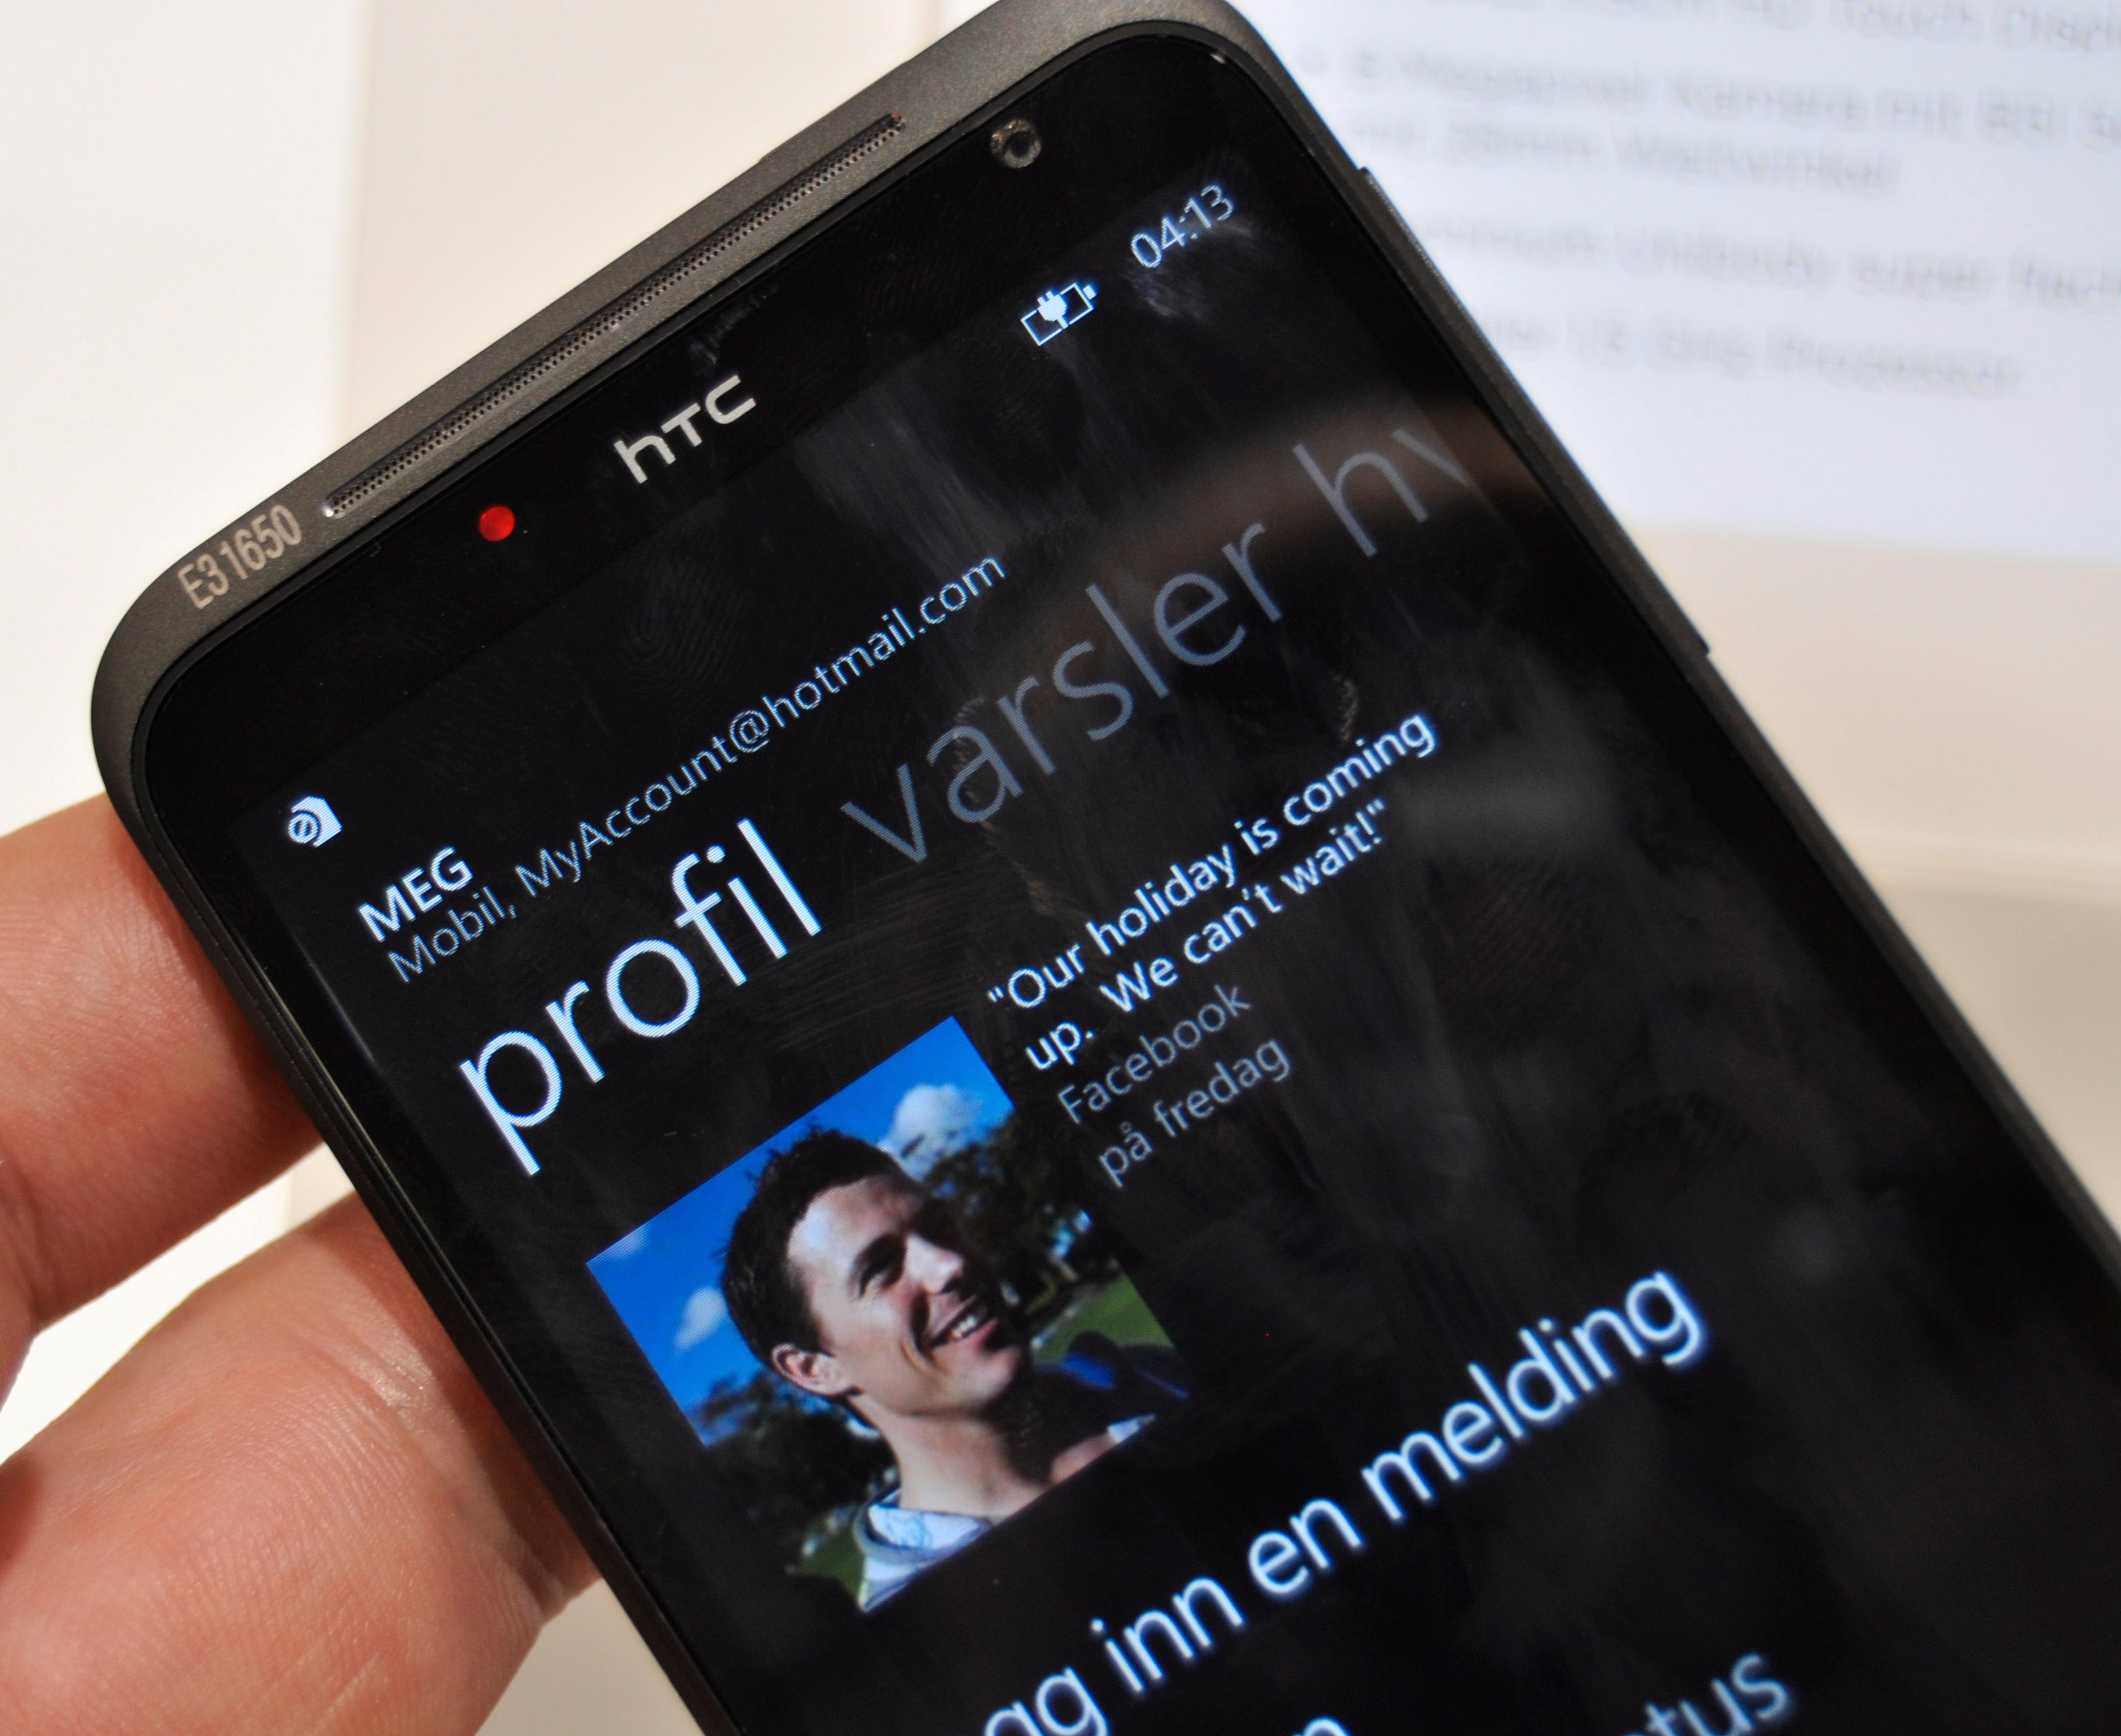 Titan blir en av de første Windows Phone-modellene med norsk språk og norske tjenester. HTCs egen filmtjeneste Watch blir også tilgjengelig.